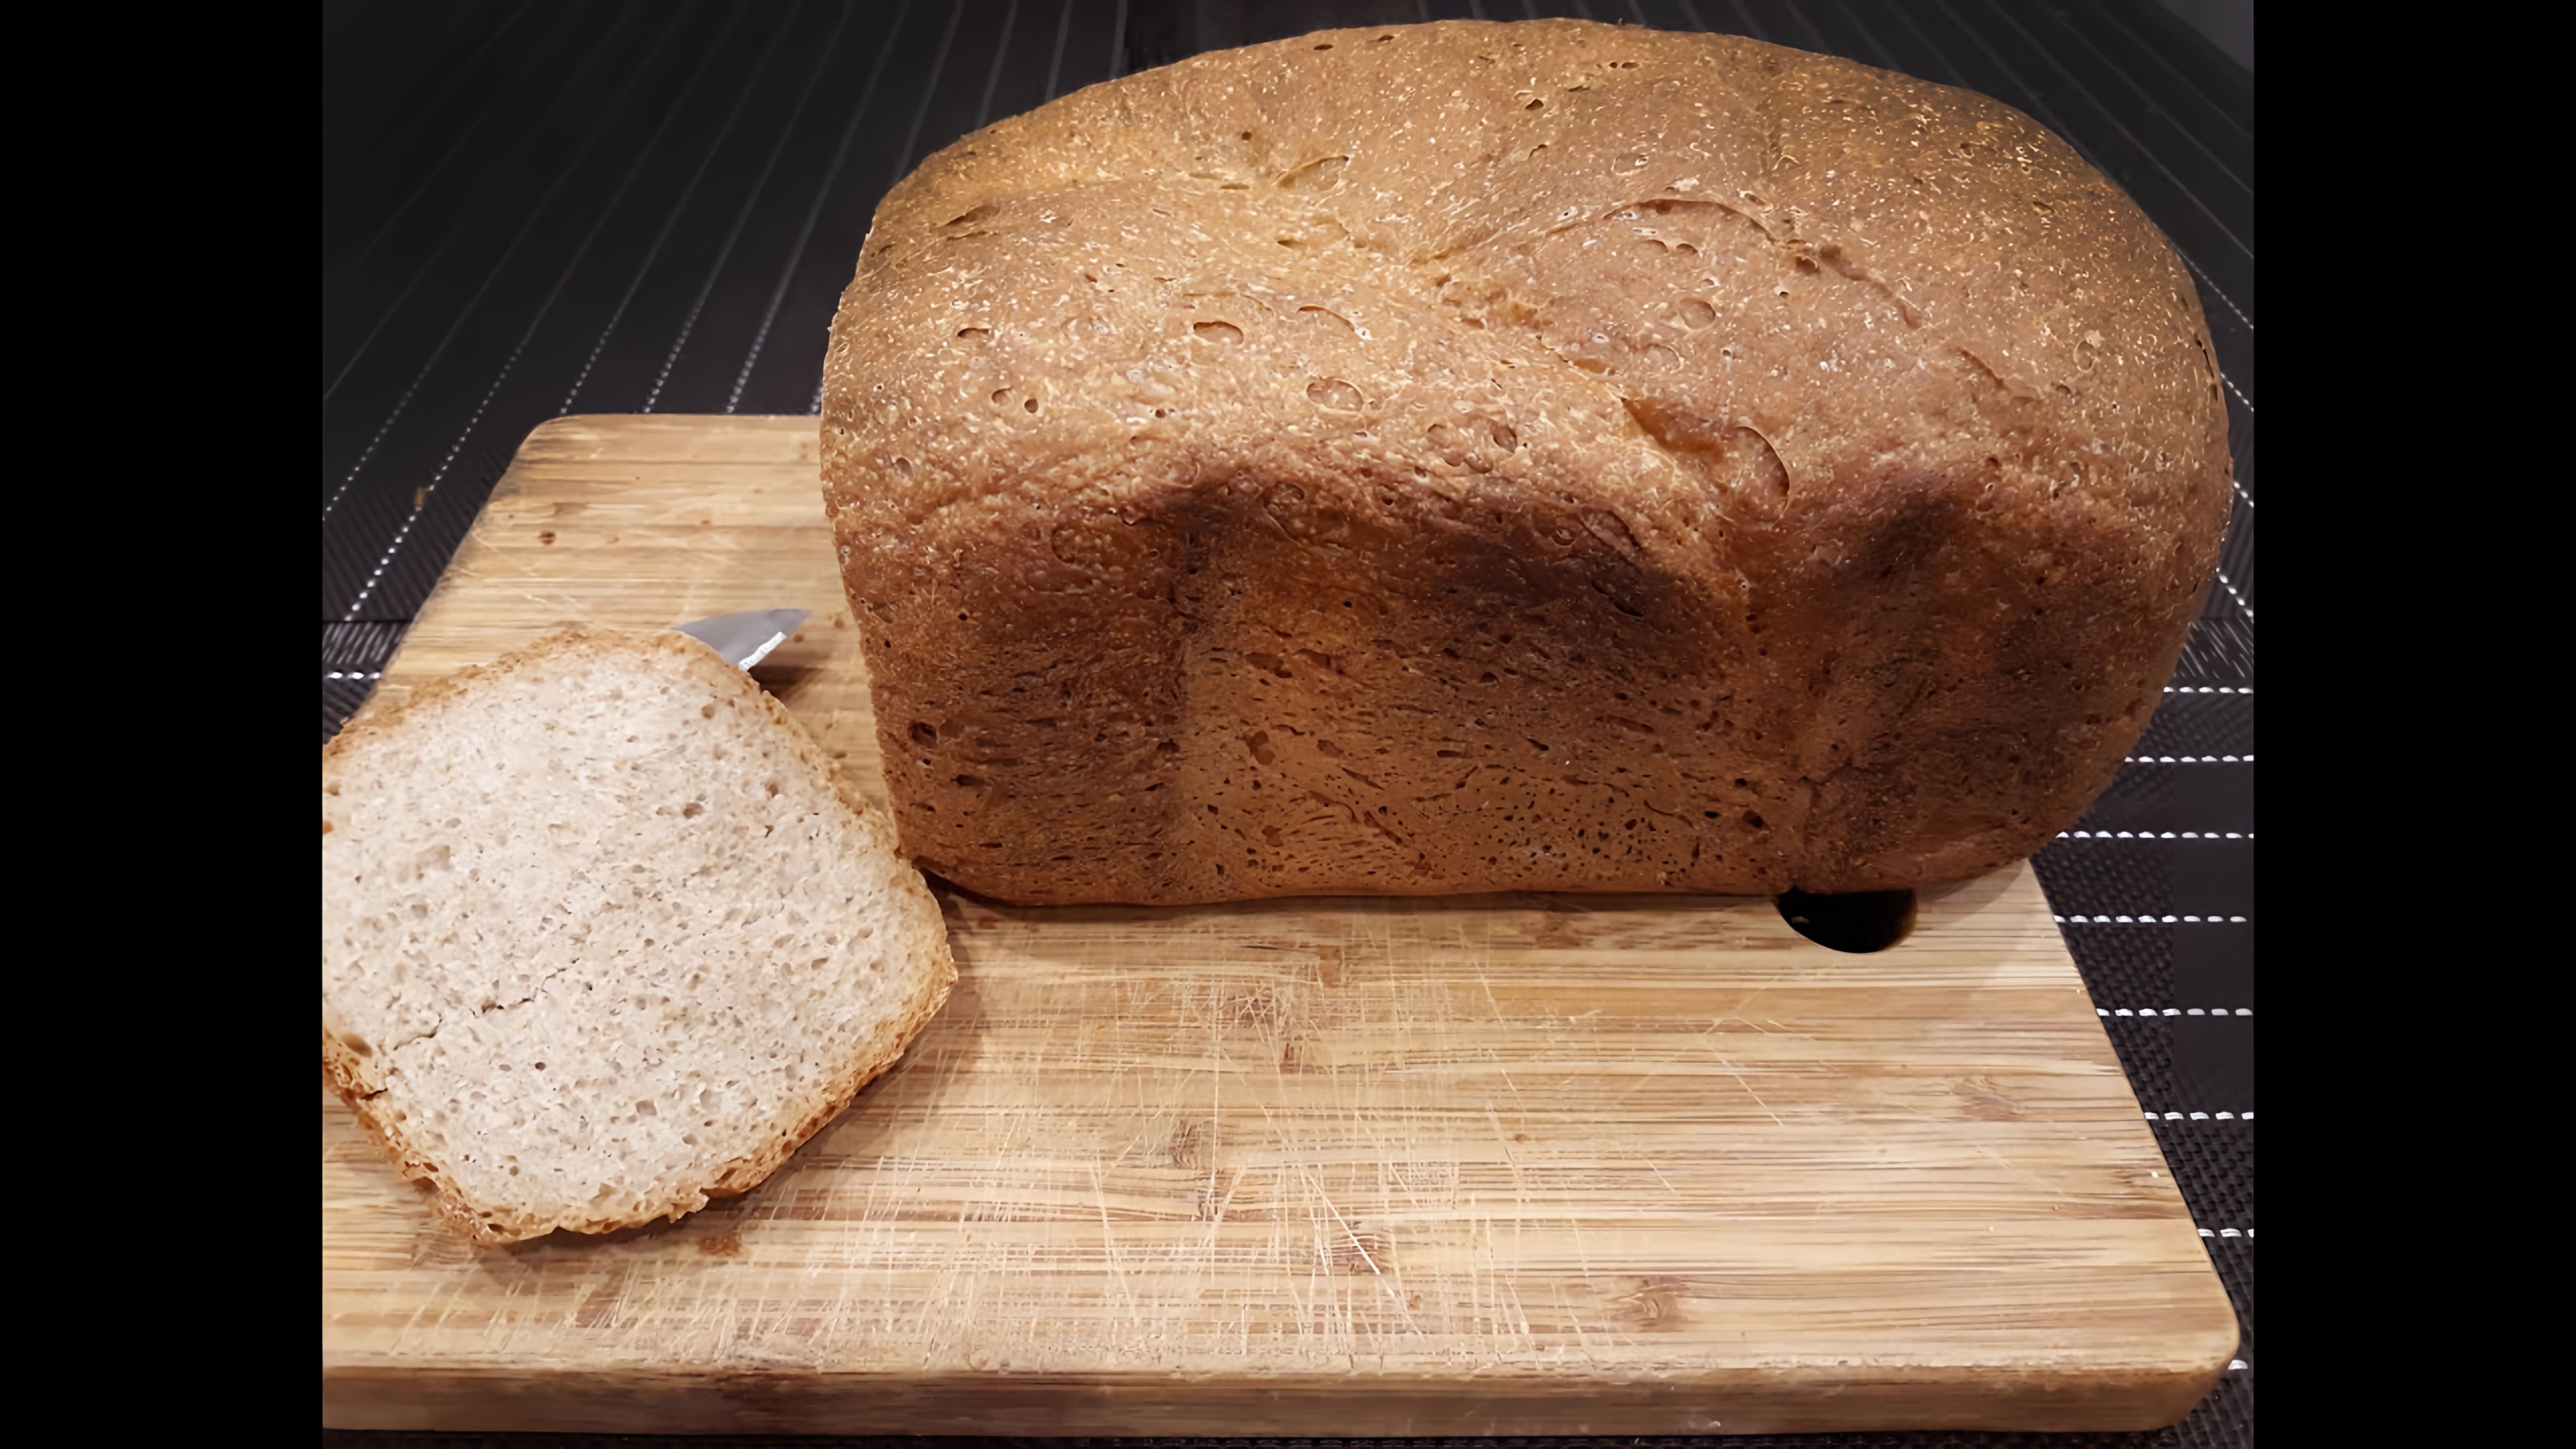 В этом видео демонстрируется процесс приготовления ржано-пшеничного хлеба в хлебопечке